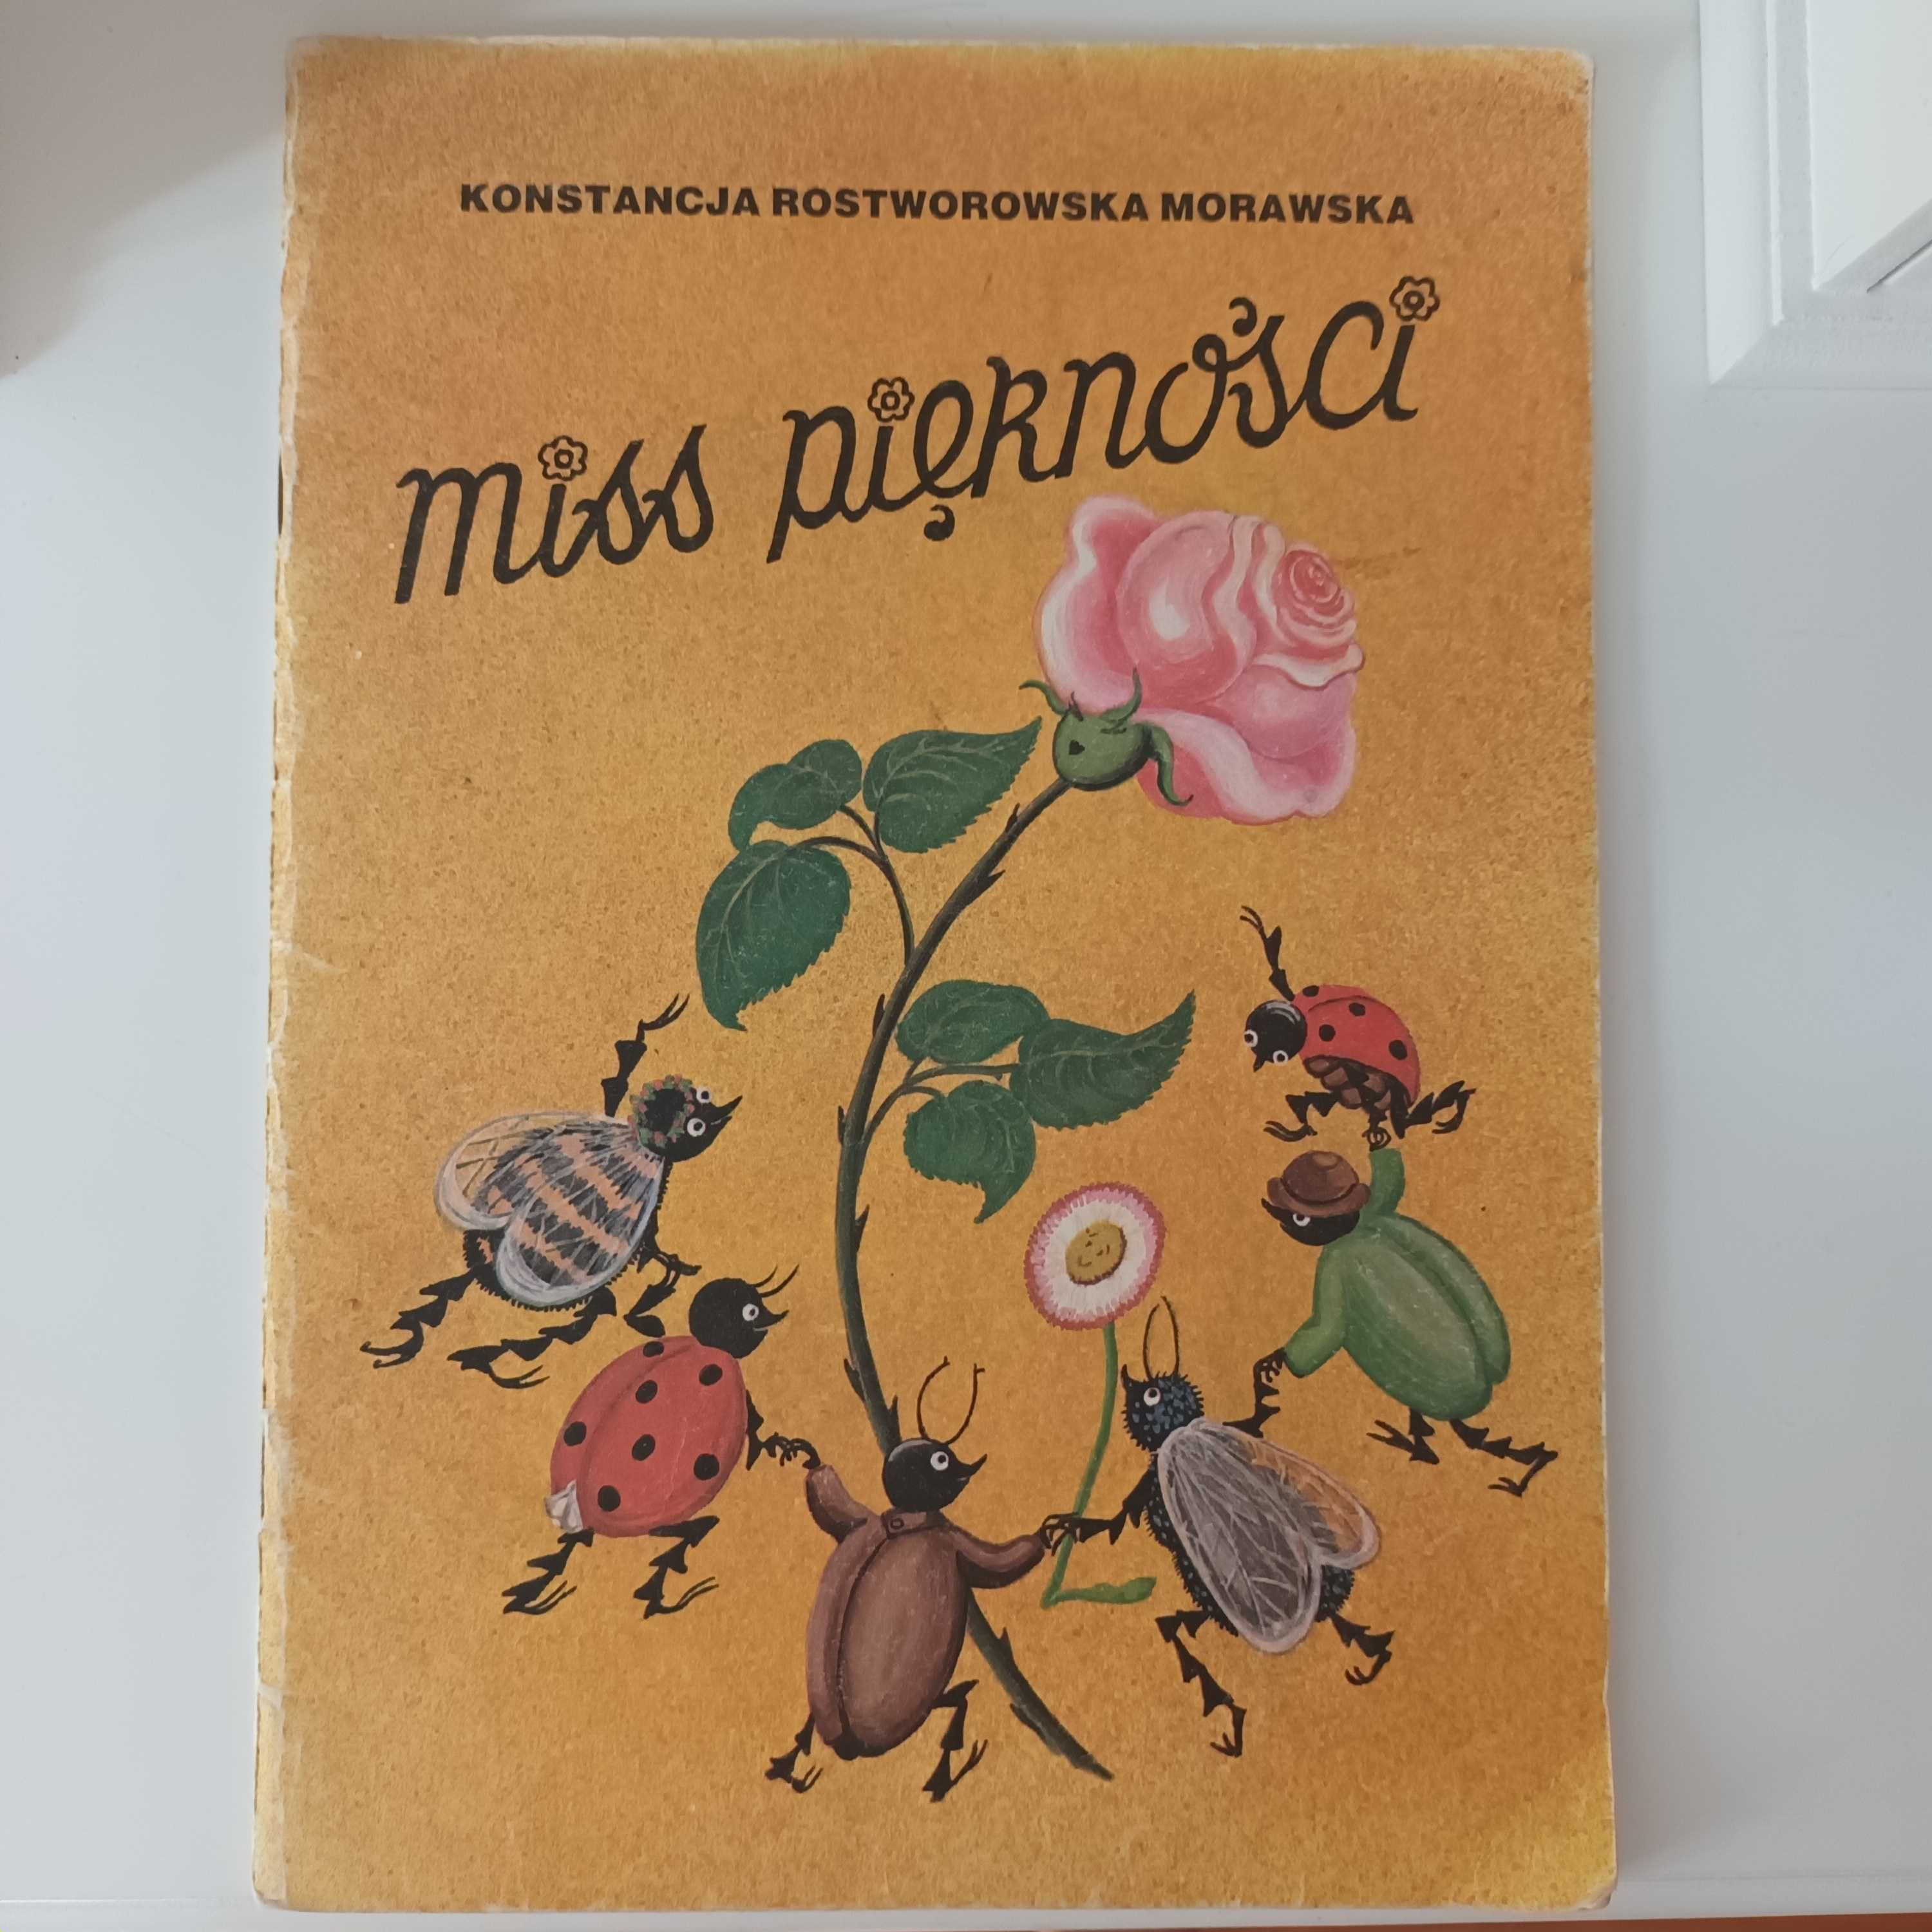 Miss piękności - K. Rostworowska Morawska